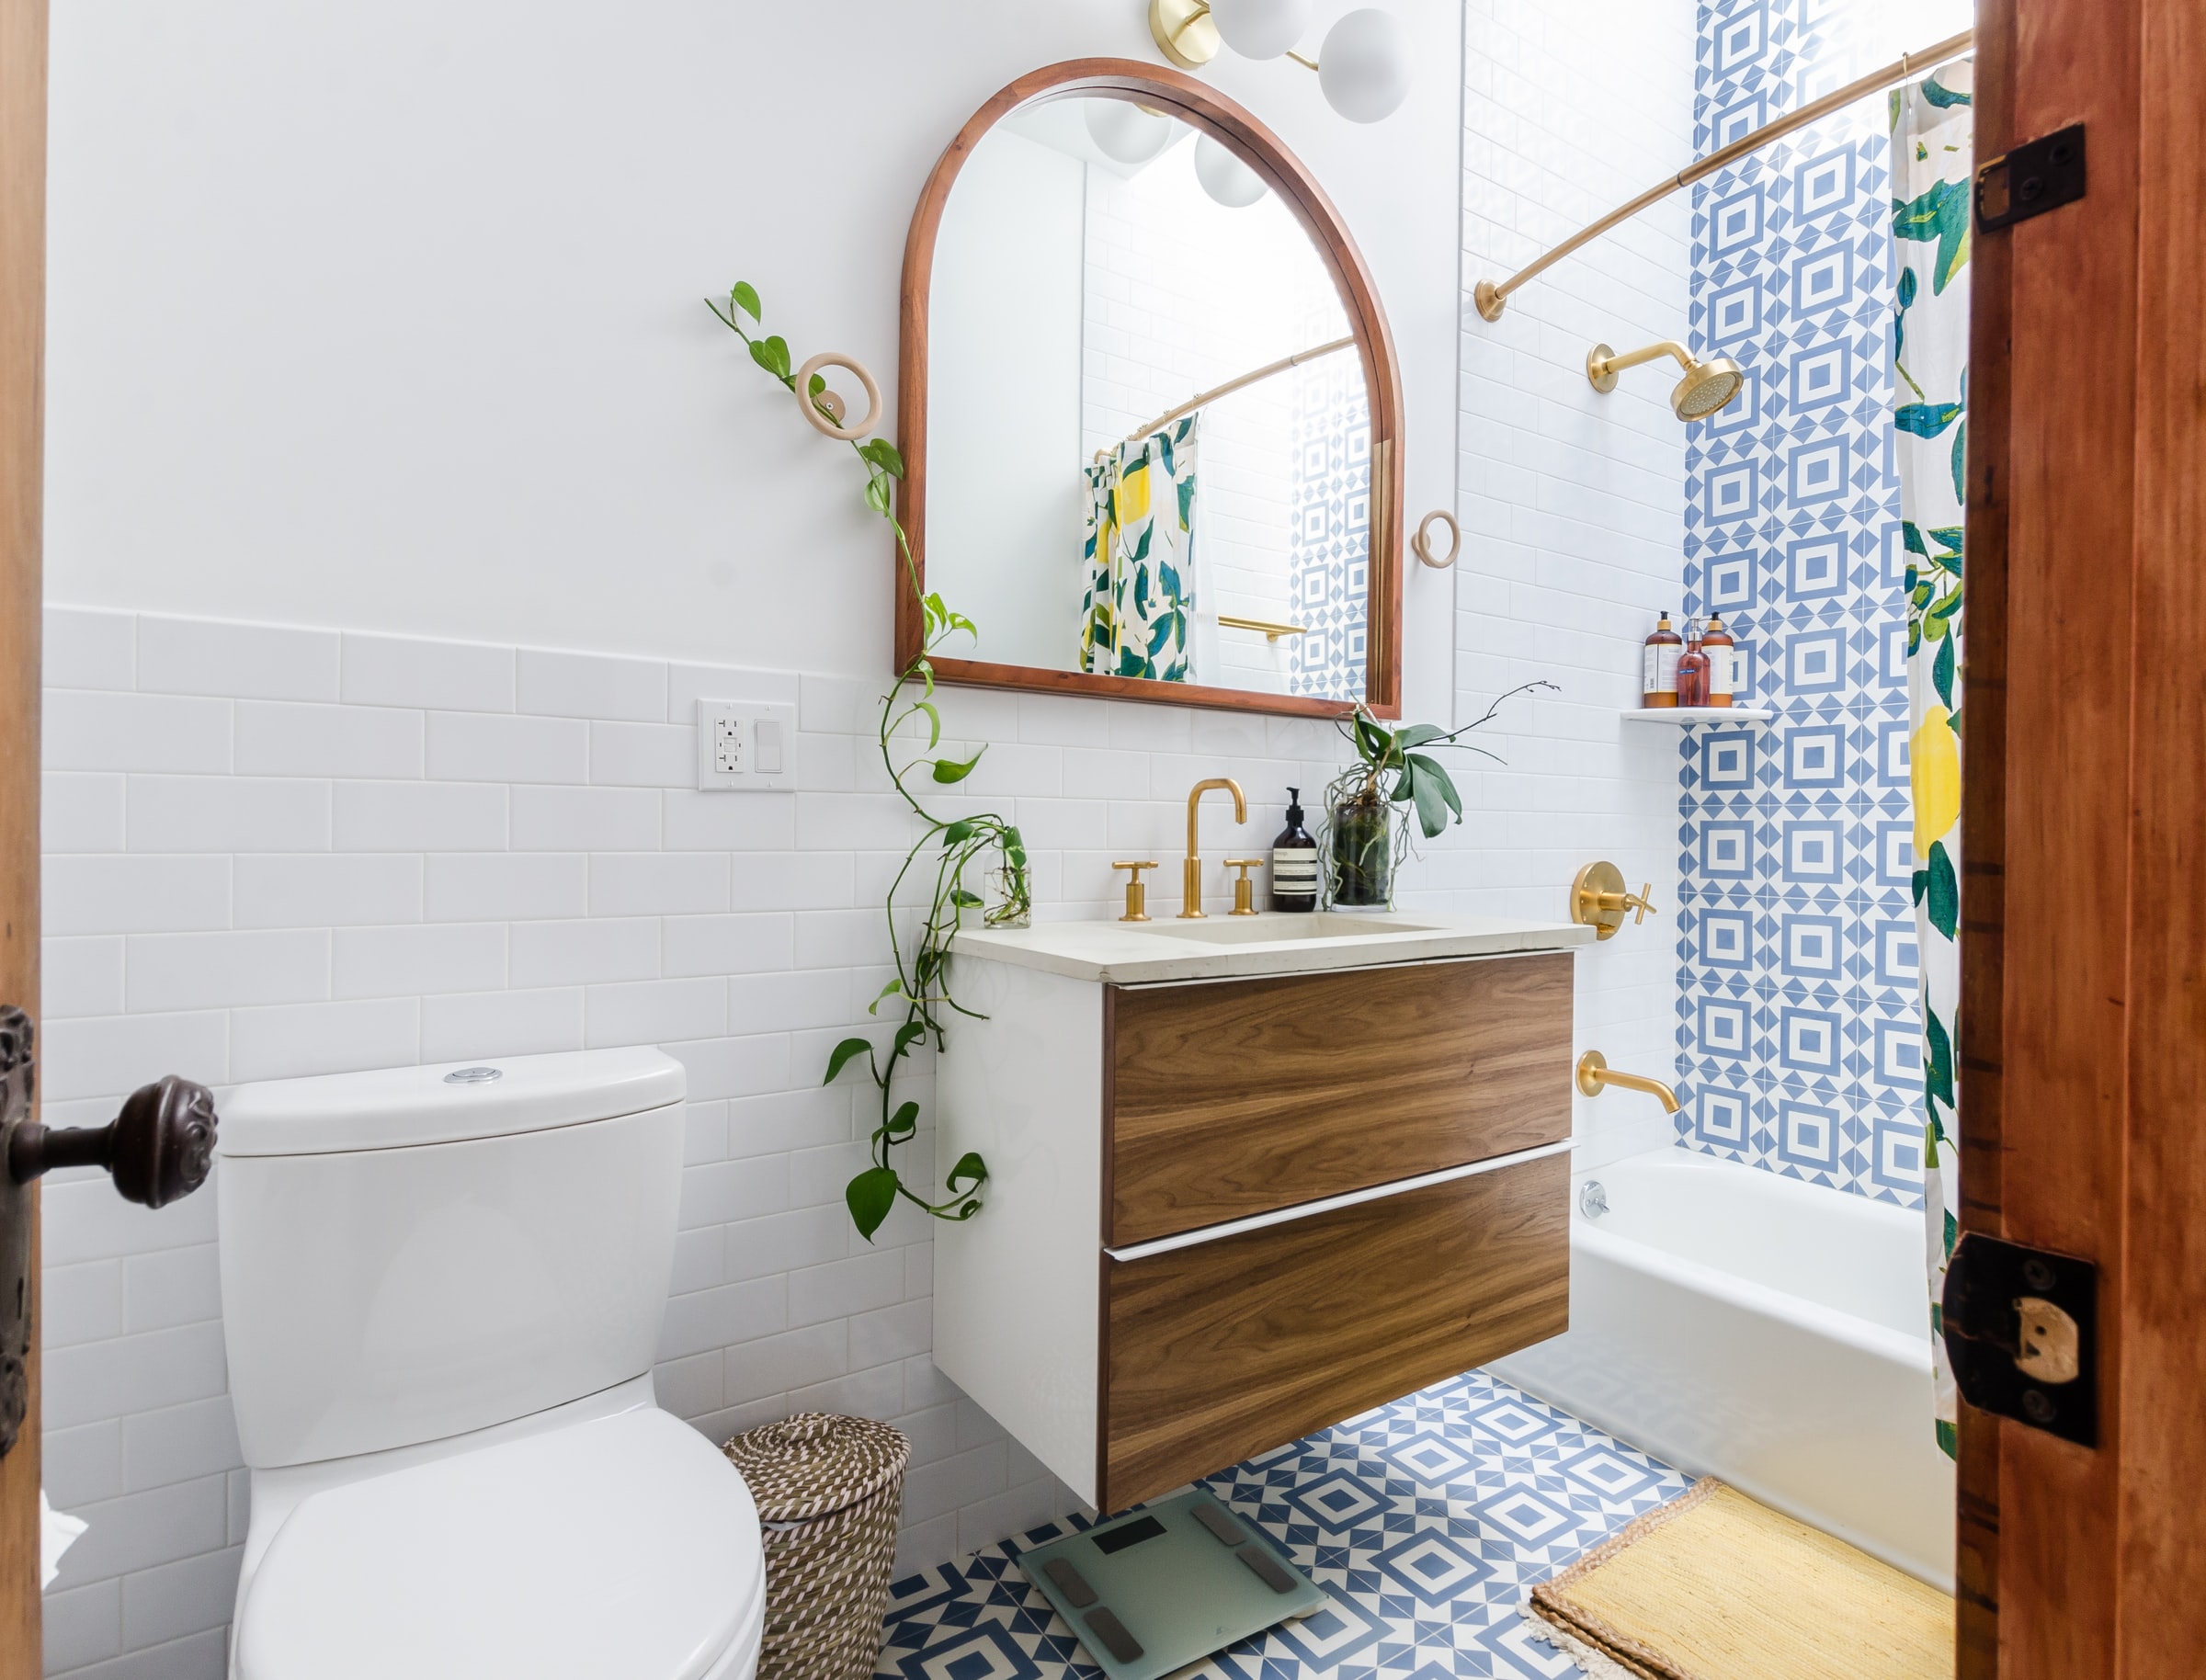 Обновляем ванную без лишних затрат: простые приемы для стильного интерьера